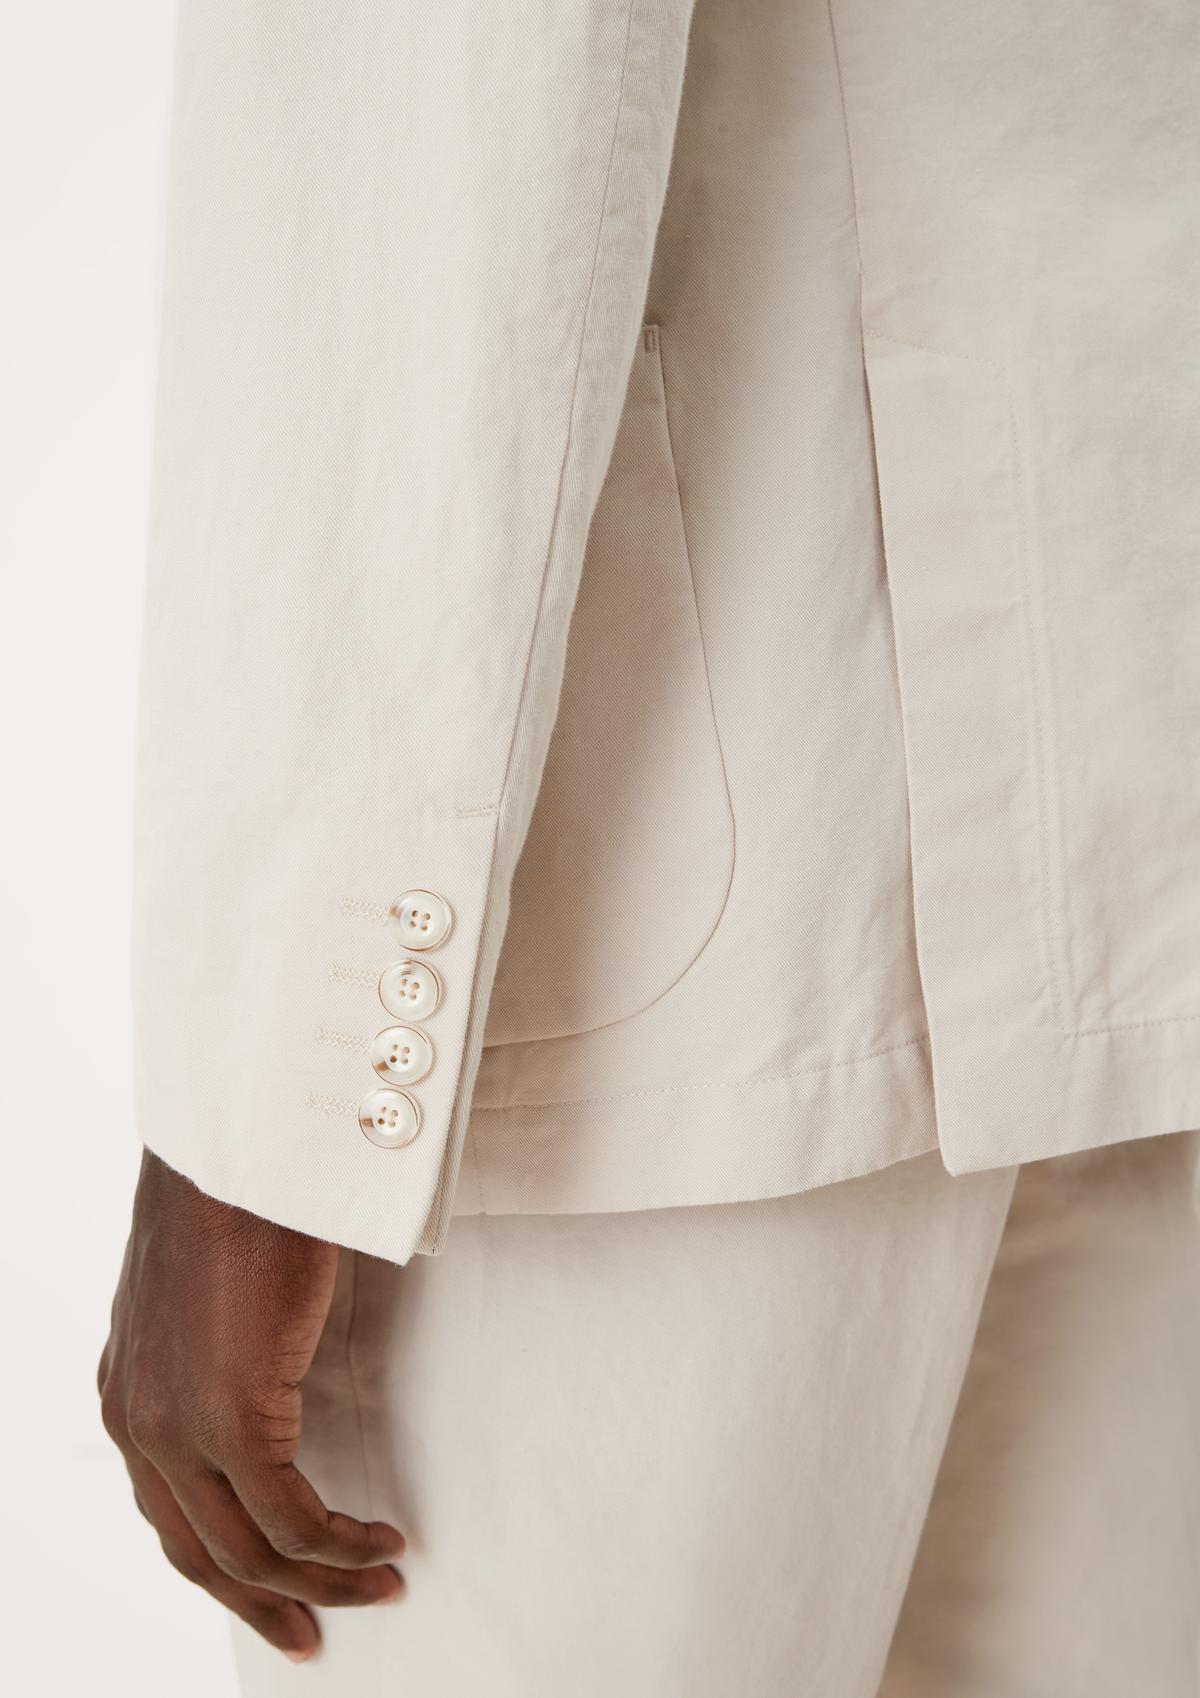 s.Oliver Slim: Blended linen sports jacket